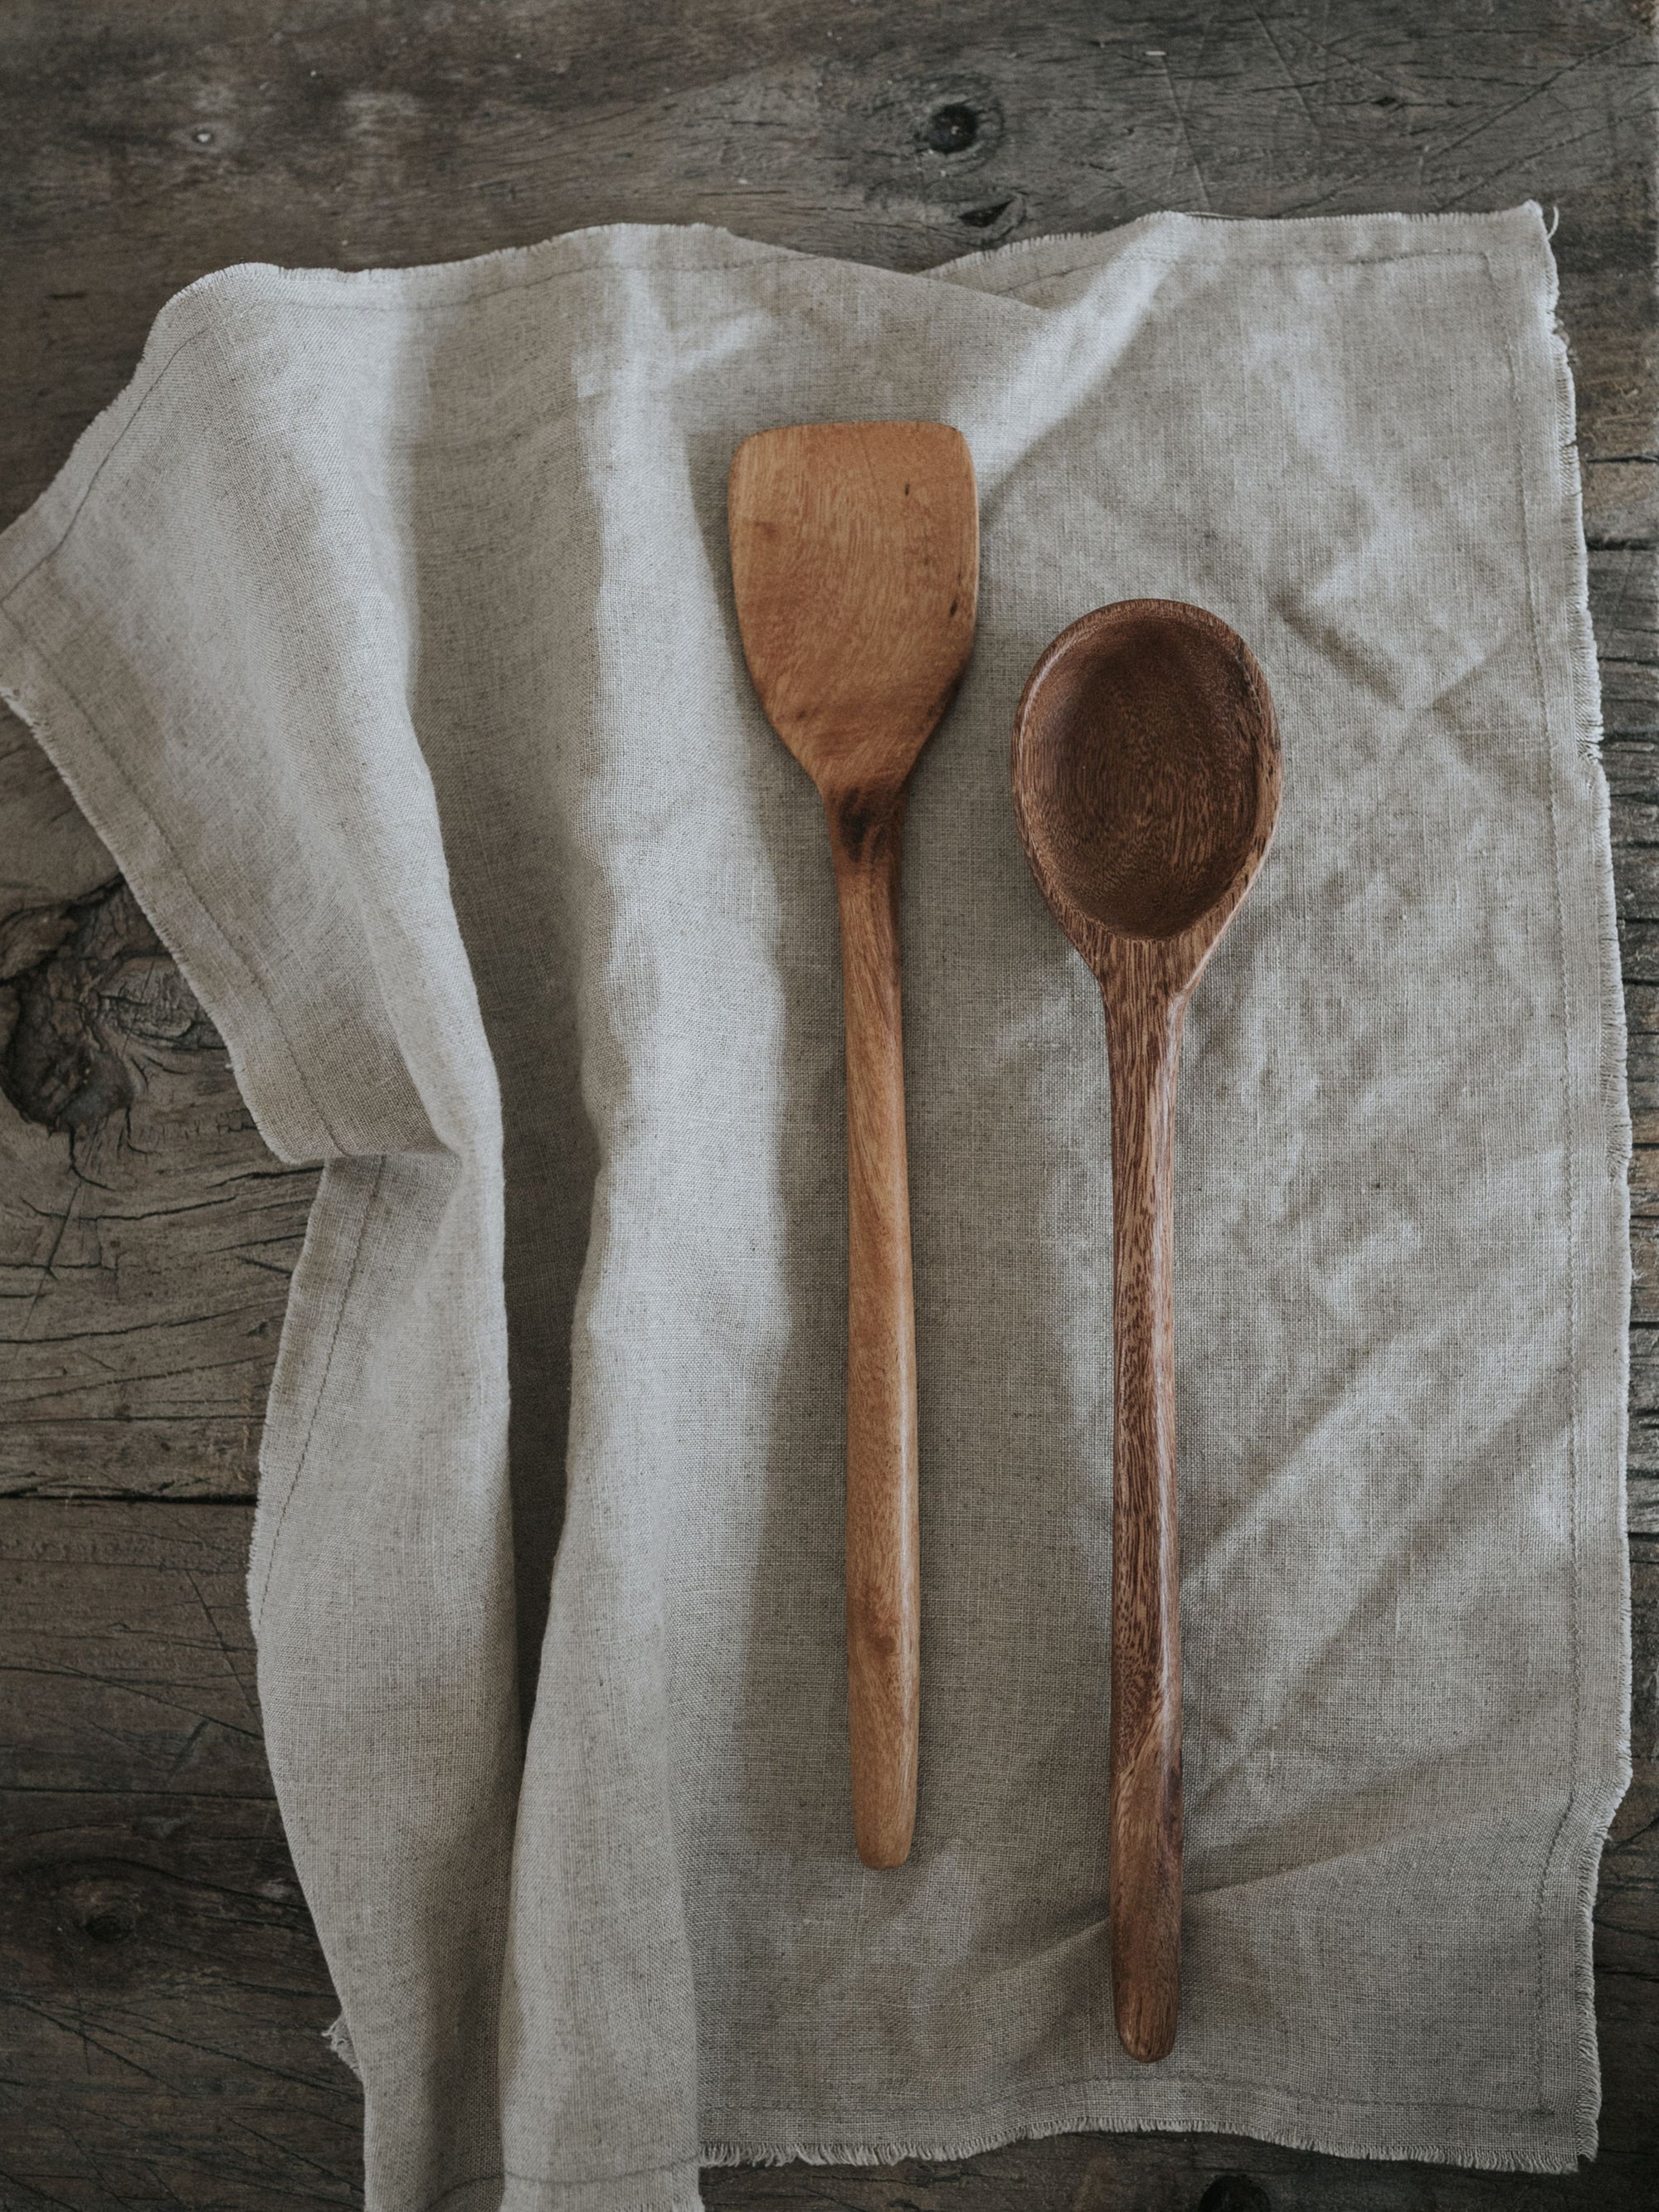 Handmade Wooden Spoon Set, Wooden Kitchen Utensils︱ - La Tiendita